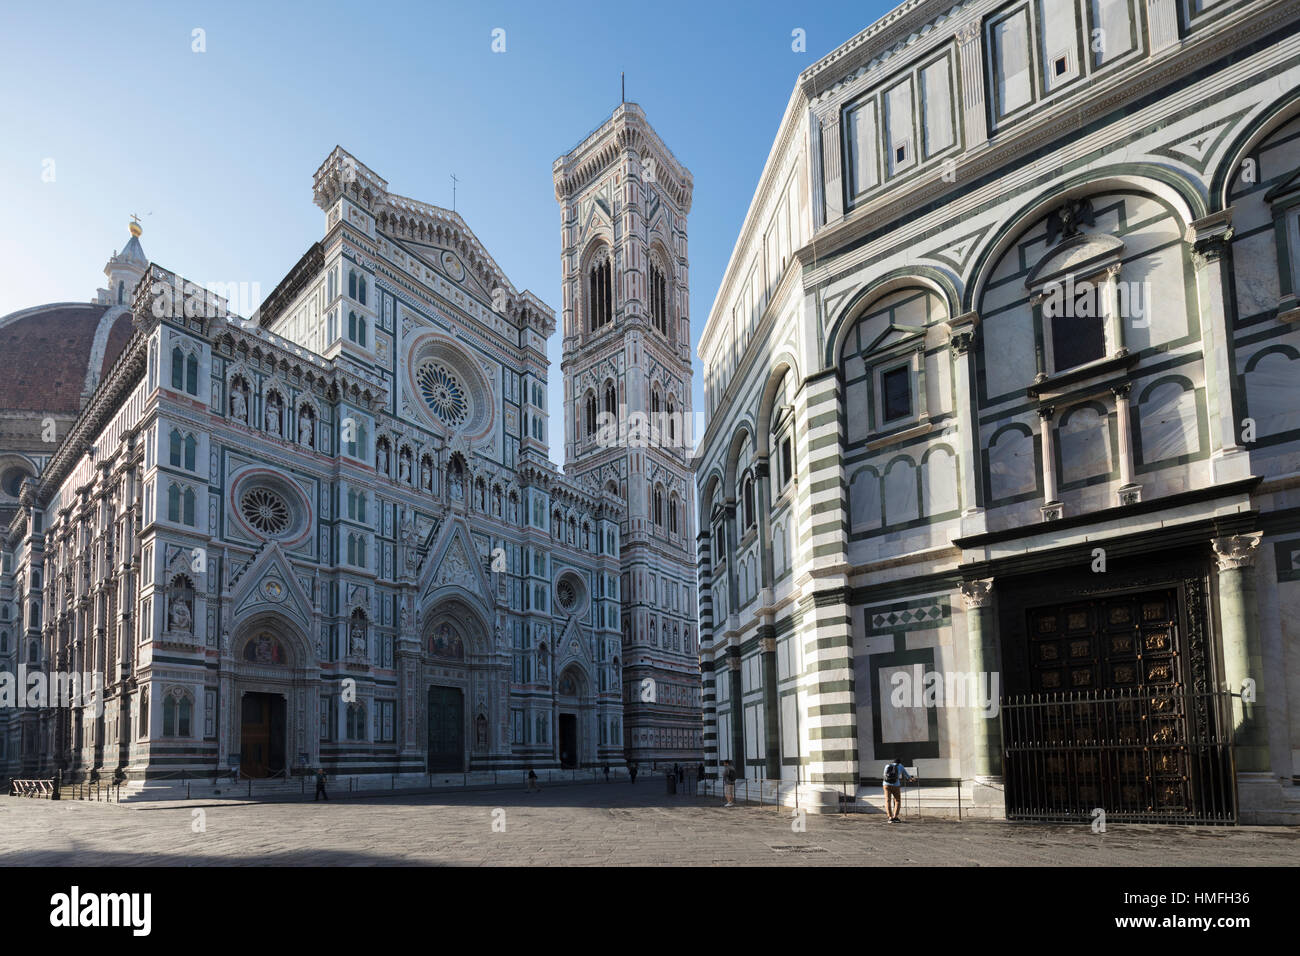 Le complexe de Duomo di Firenze avec ancien baptistère, le Campanile de Giotto et la coupole de Brunelleschi, Florence, Toscane, Italie Banque D'Images